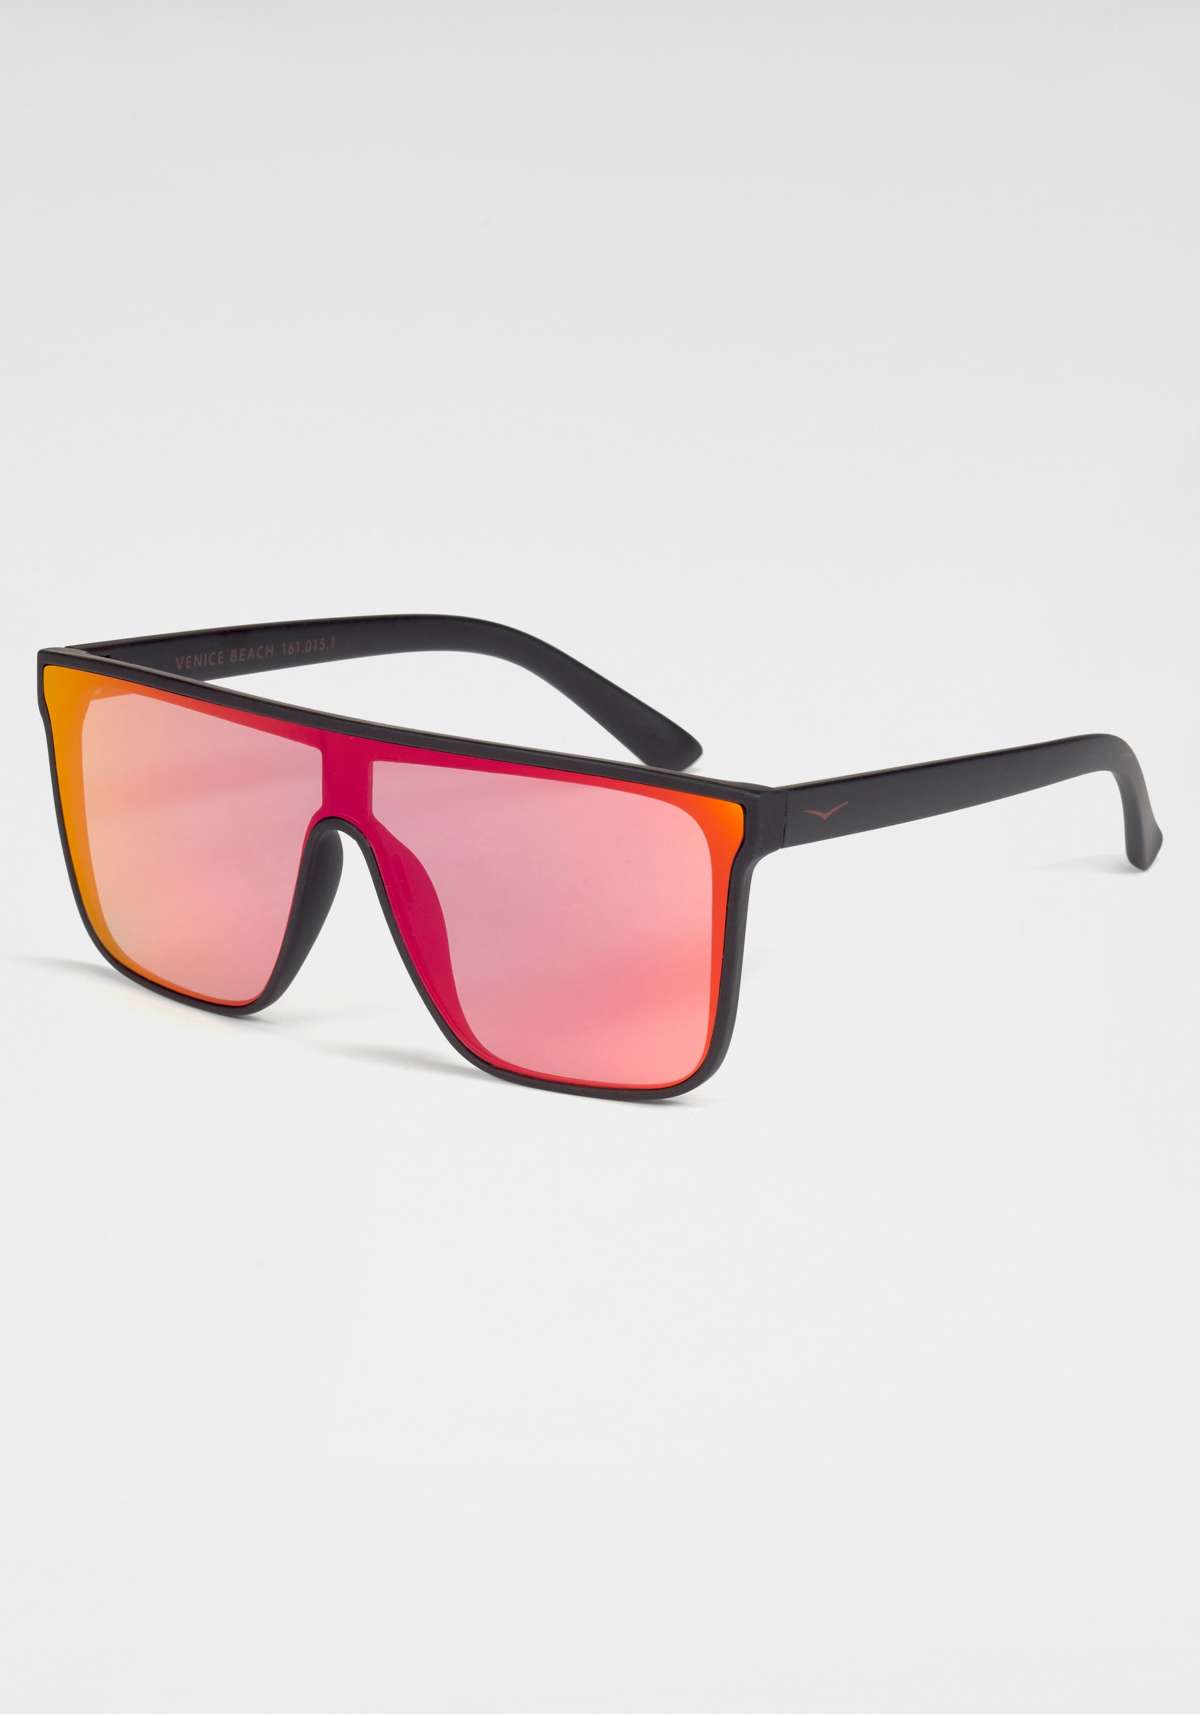 Солнцезащитные очки, пластиковые однолинзовые солнцезащитные очки.